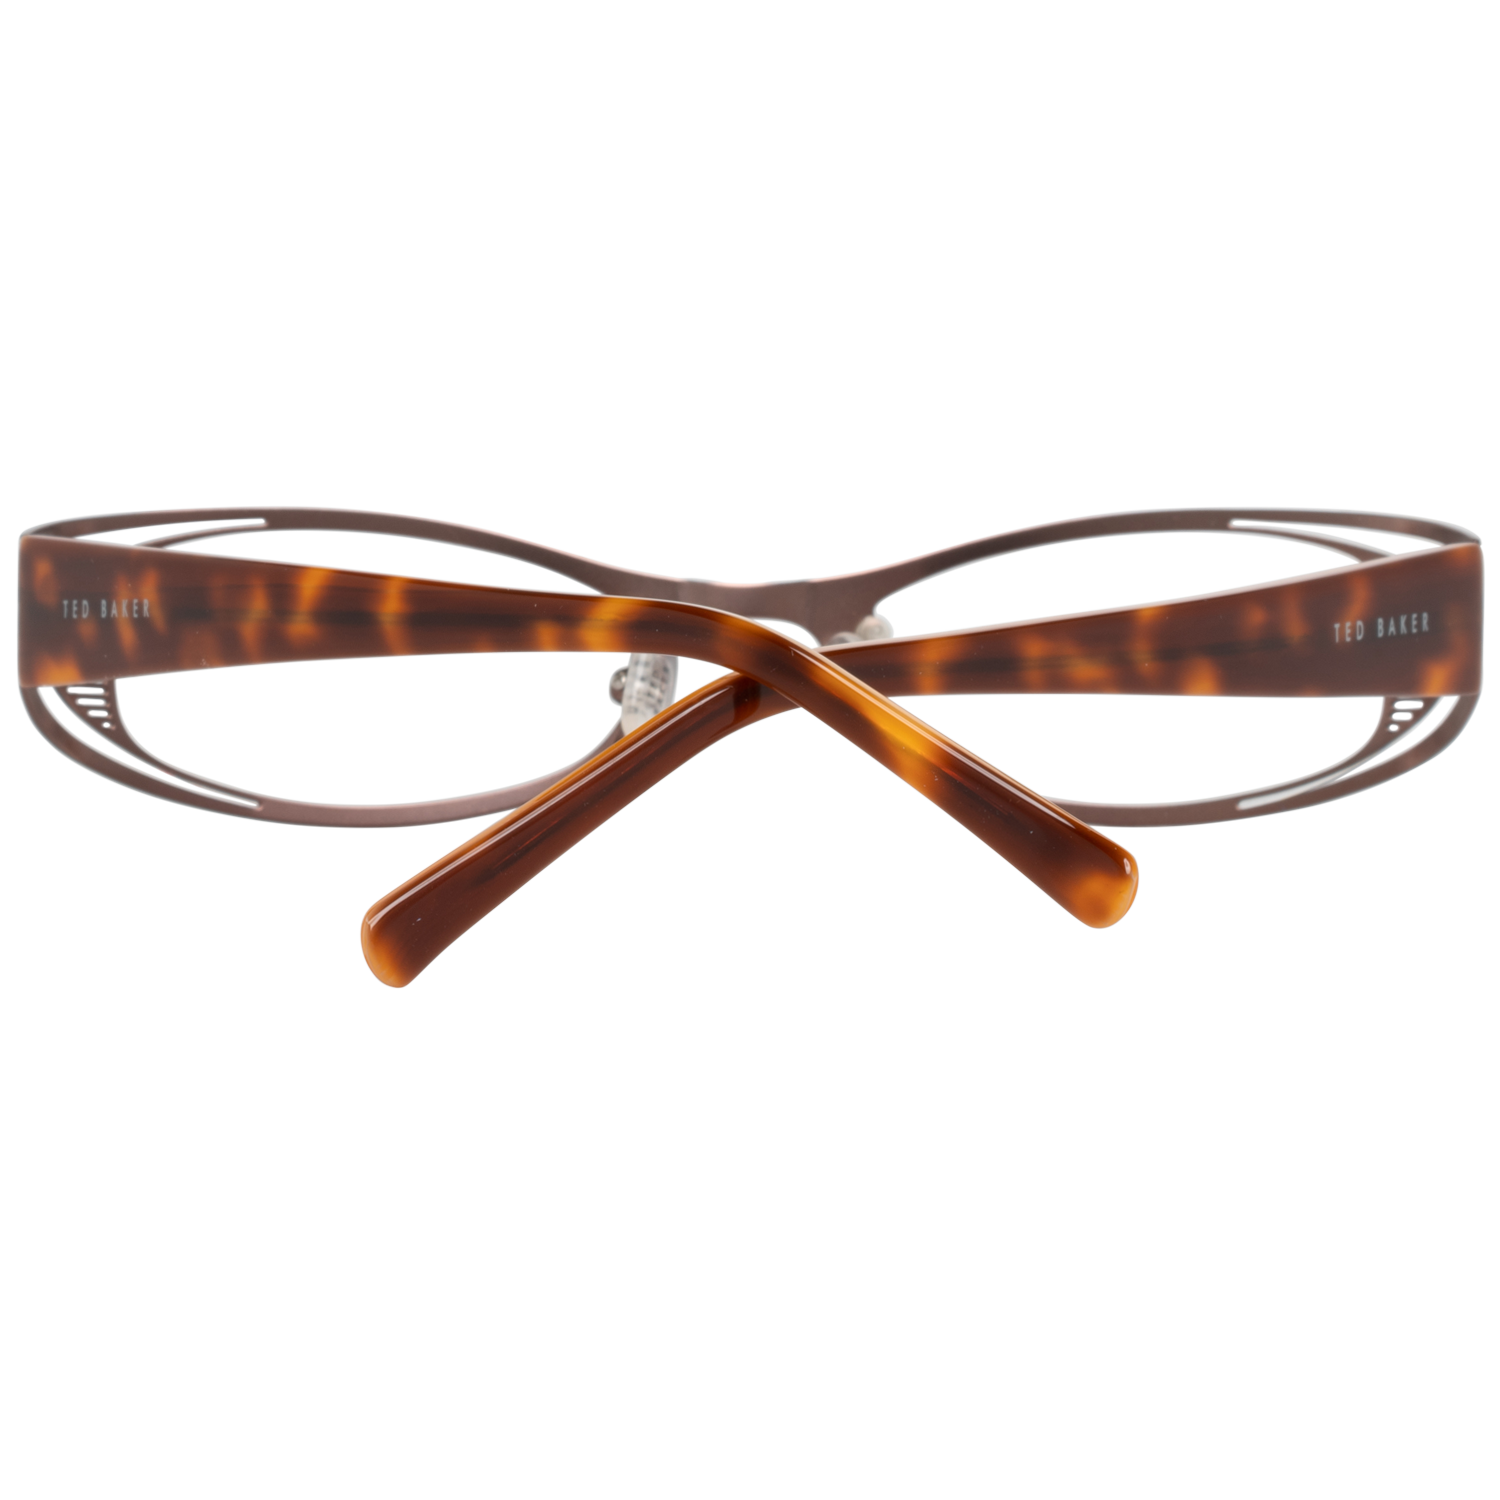 Ted Baker Frames Ted Baker Optical Frame Prescription Glasses TB2160 143 54 Eyeglasses Eyewear UK USA Australia 